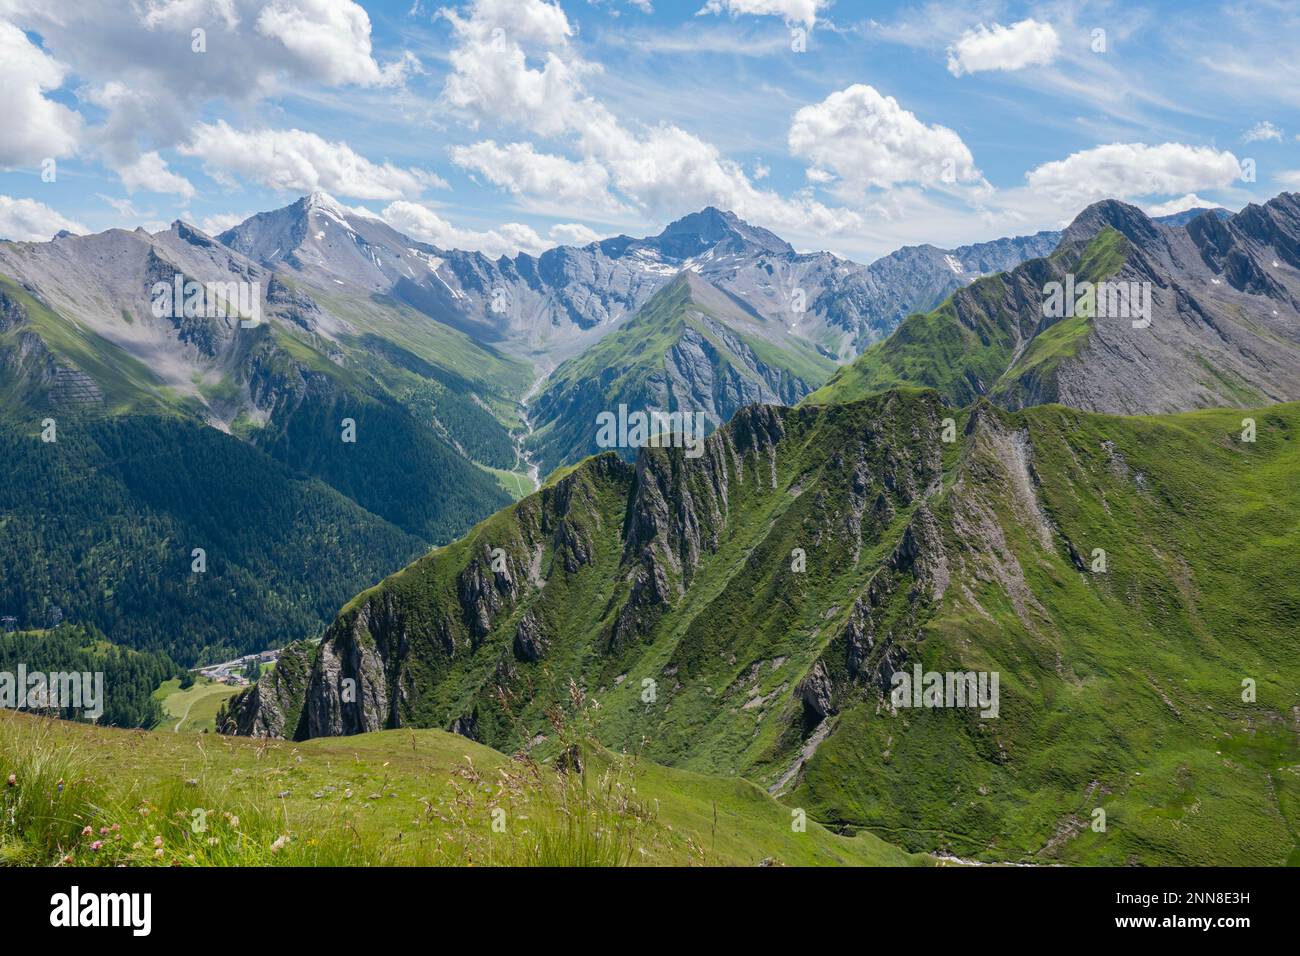 Alte vette della Svizzera con la città di Samnaun sullo sfondo. Montagne più alte. La foto è stata scattata dall'Alp Trida Sattel, Austria. Foto Stock